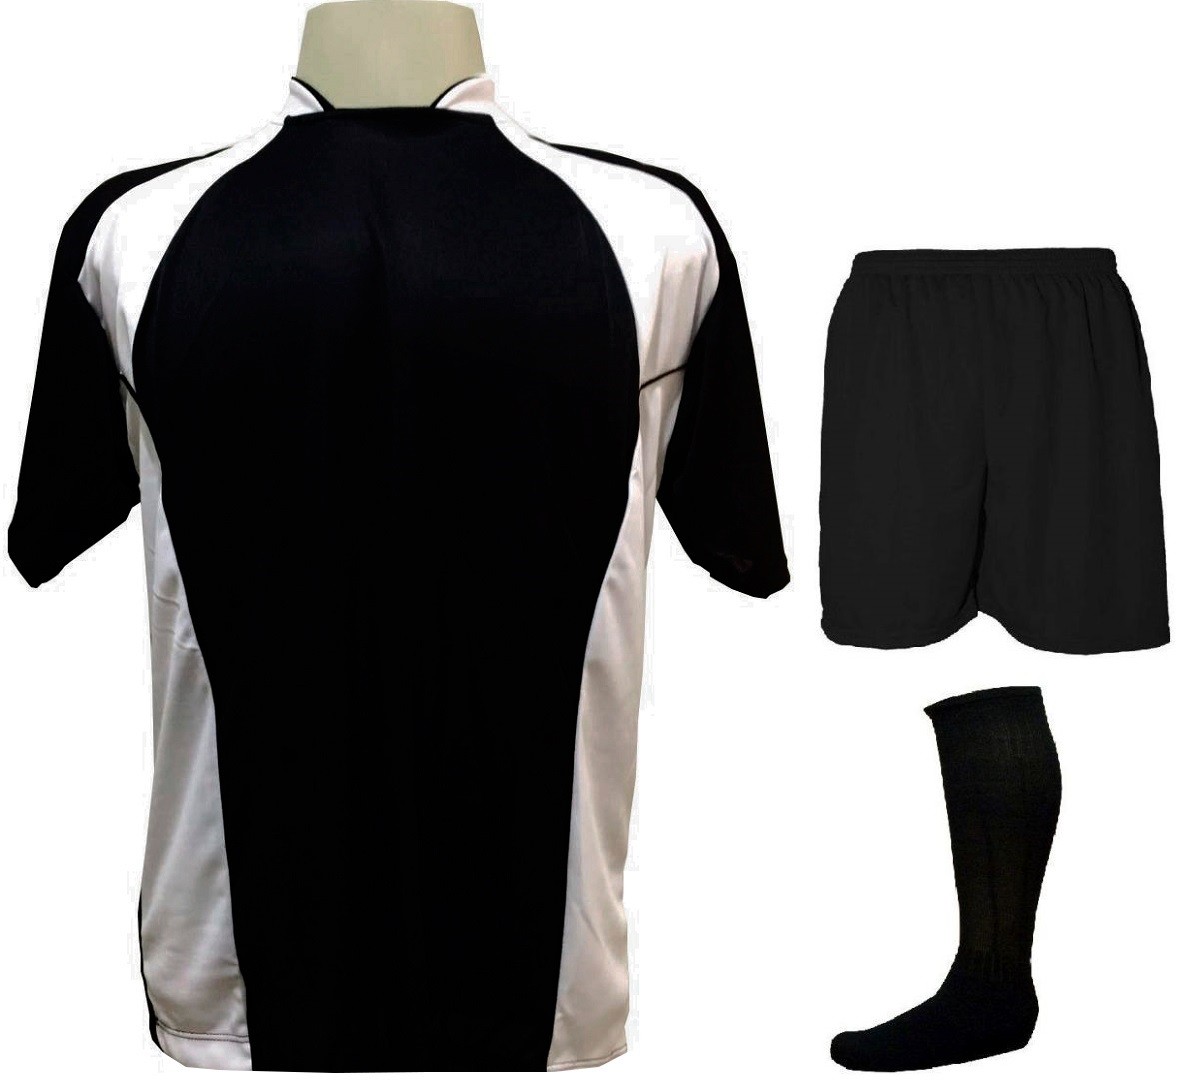 Uniforme Esportivo Completo modelo Suécia 14+1 (14 camisas Preto/Branco + 14 calções Madrid Preto + 14 pares de meiões Preto + 1 conjunto de goleiro) + Brindes